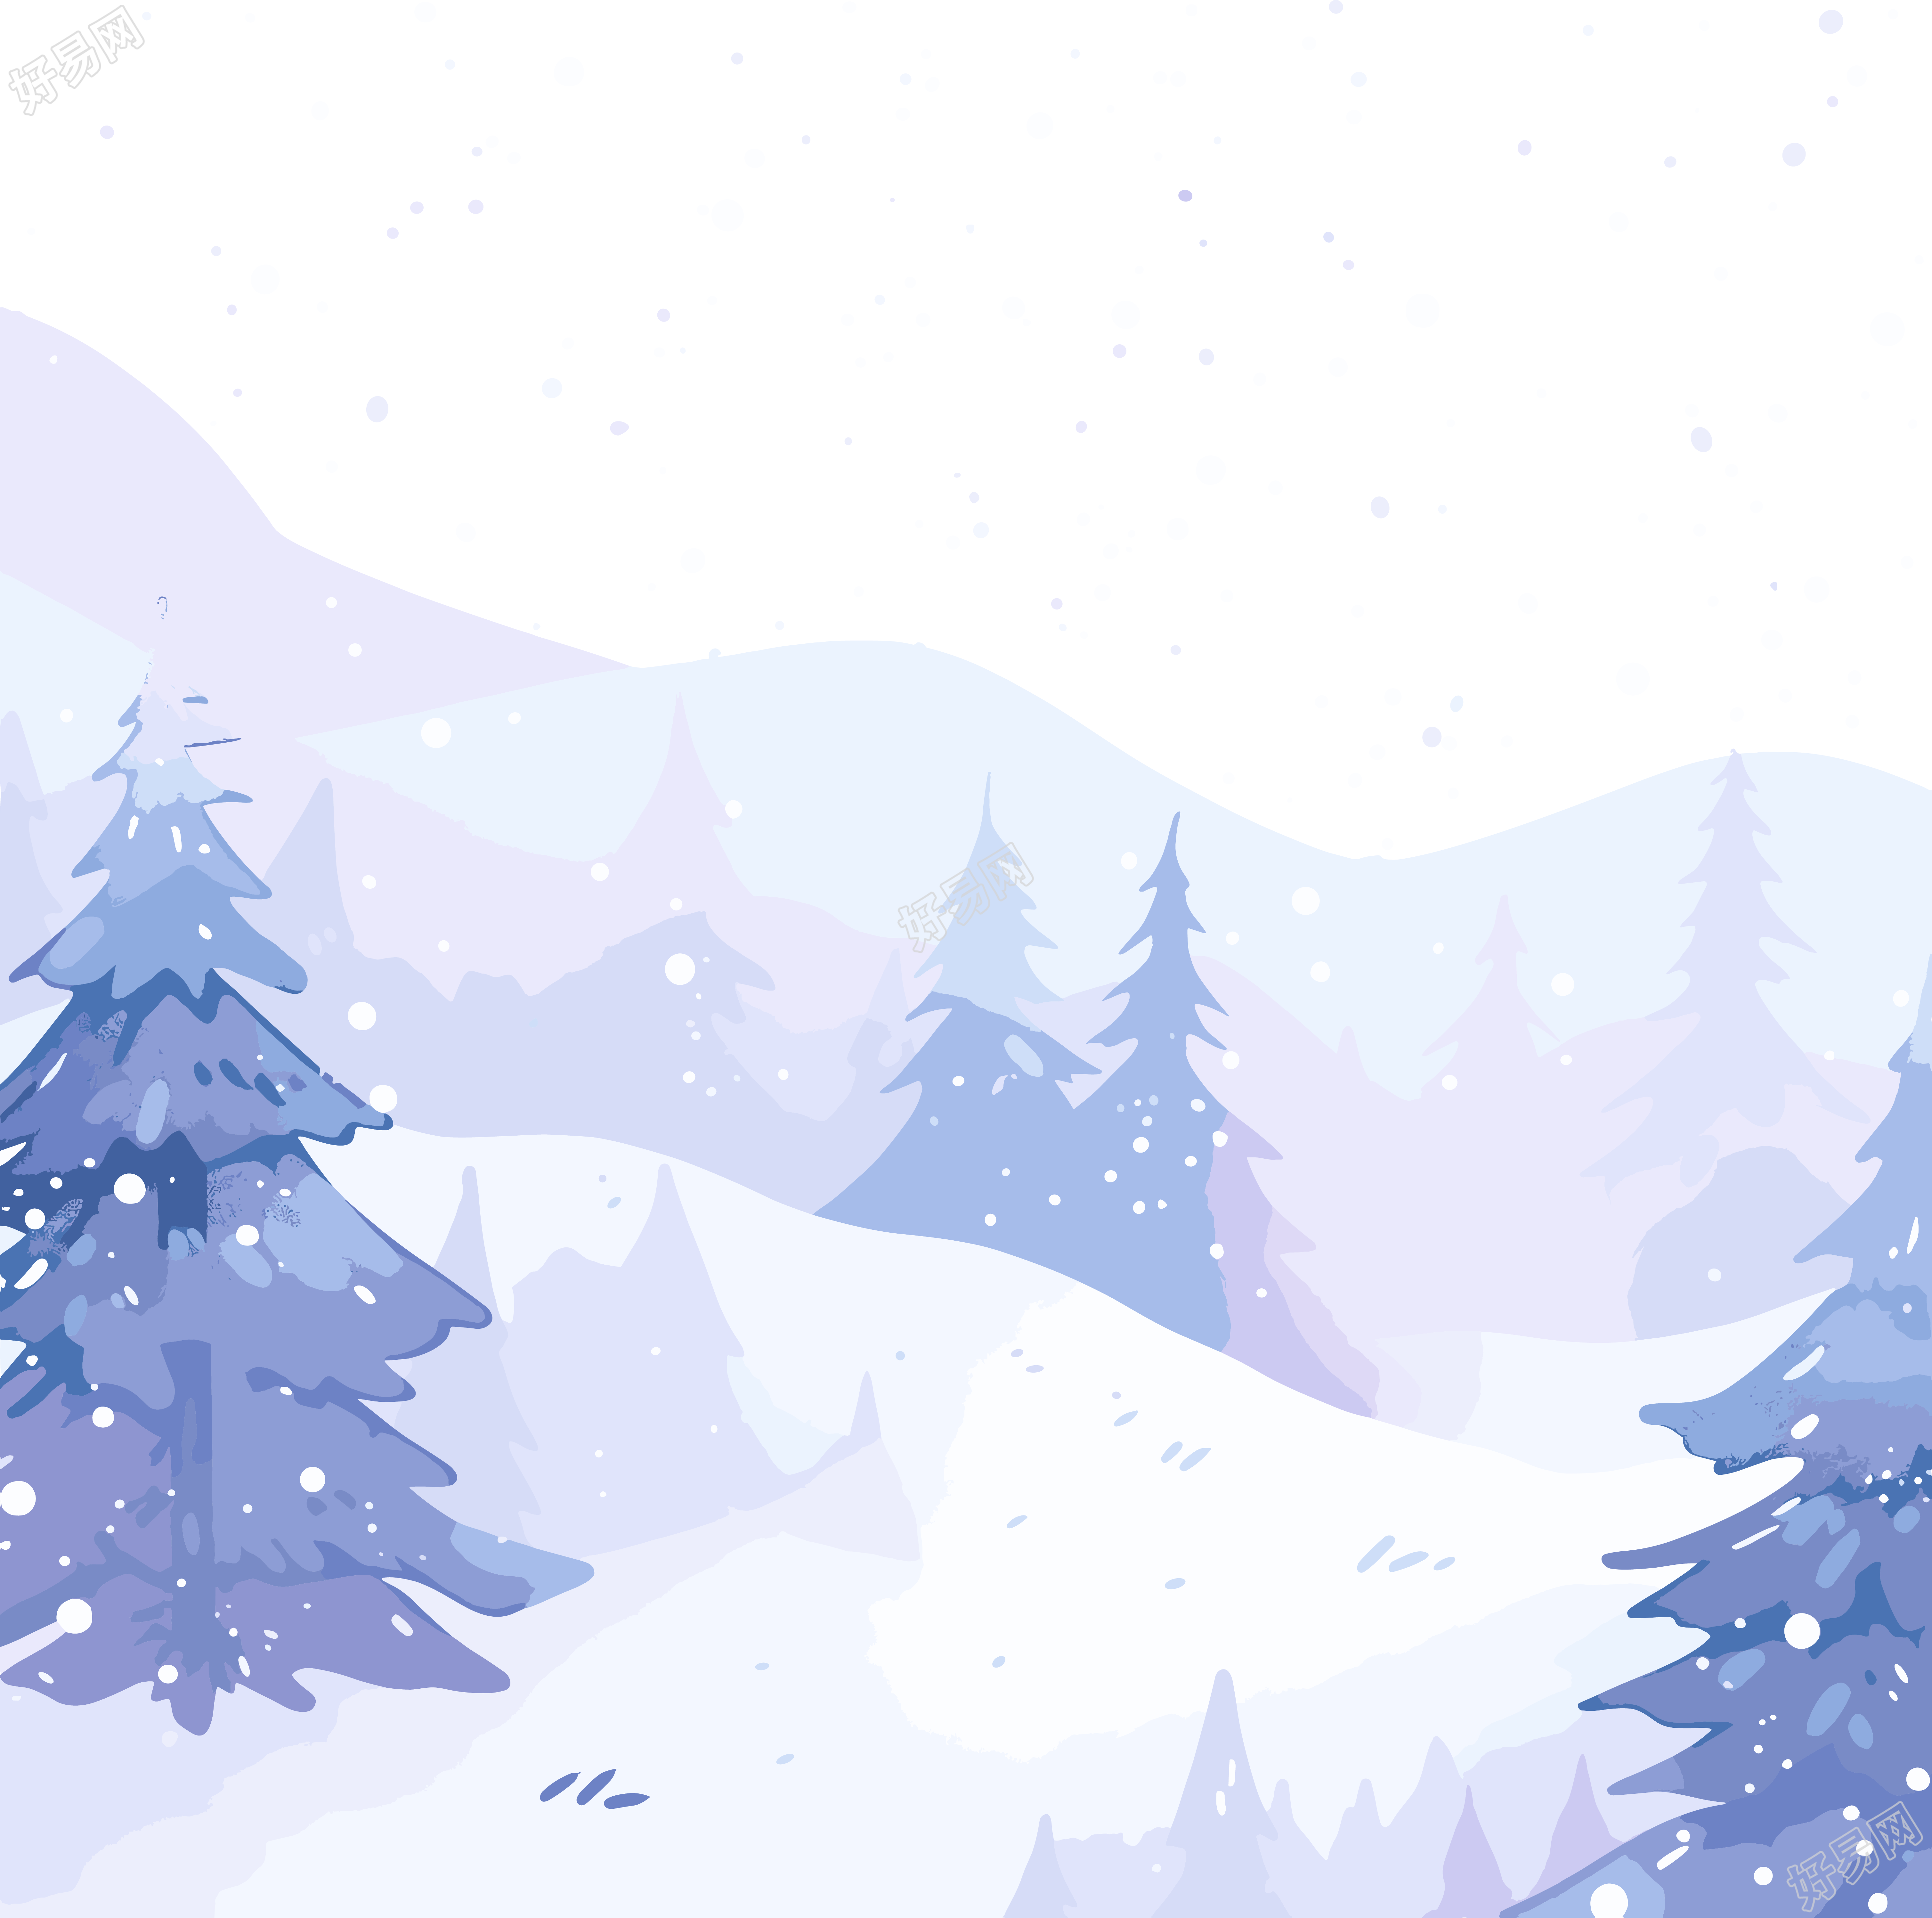 雪景透明背景素材